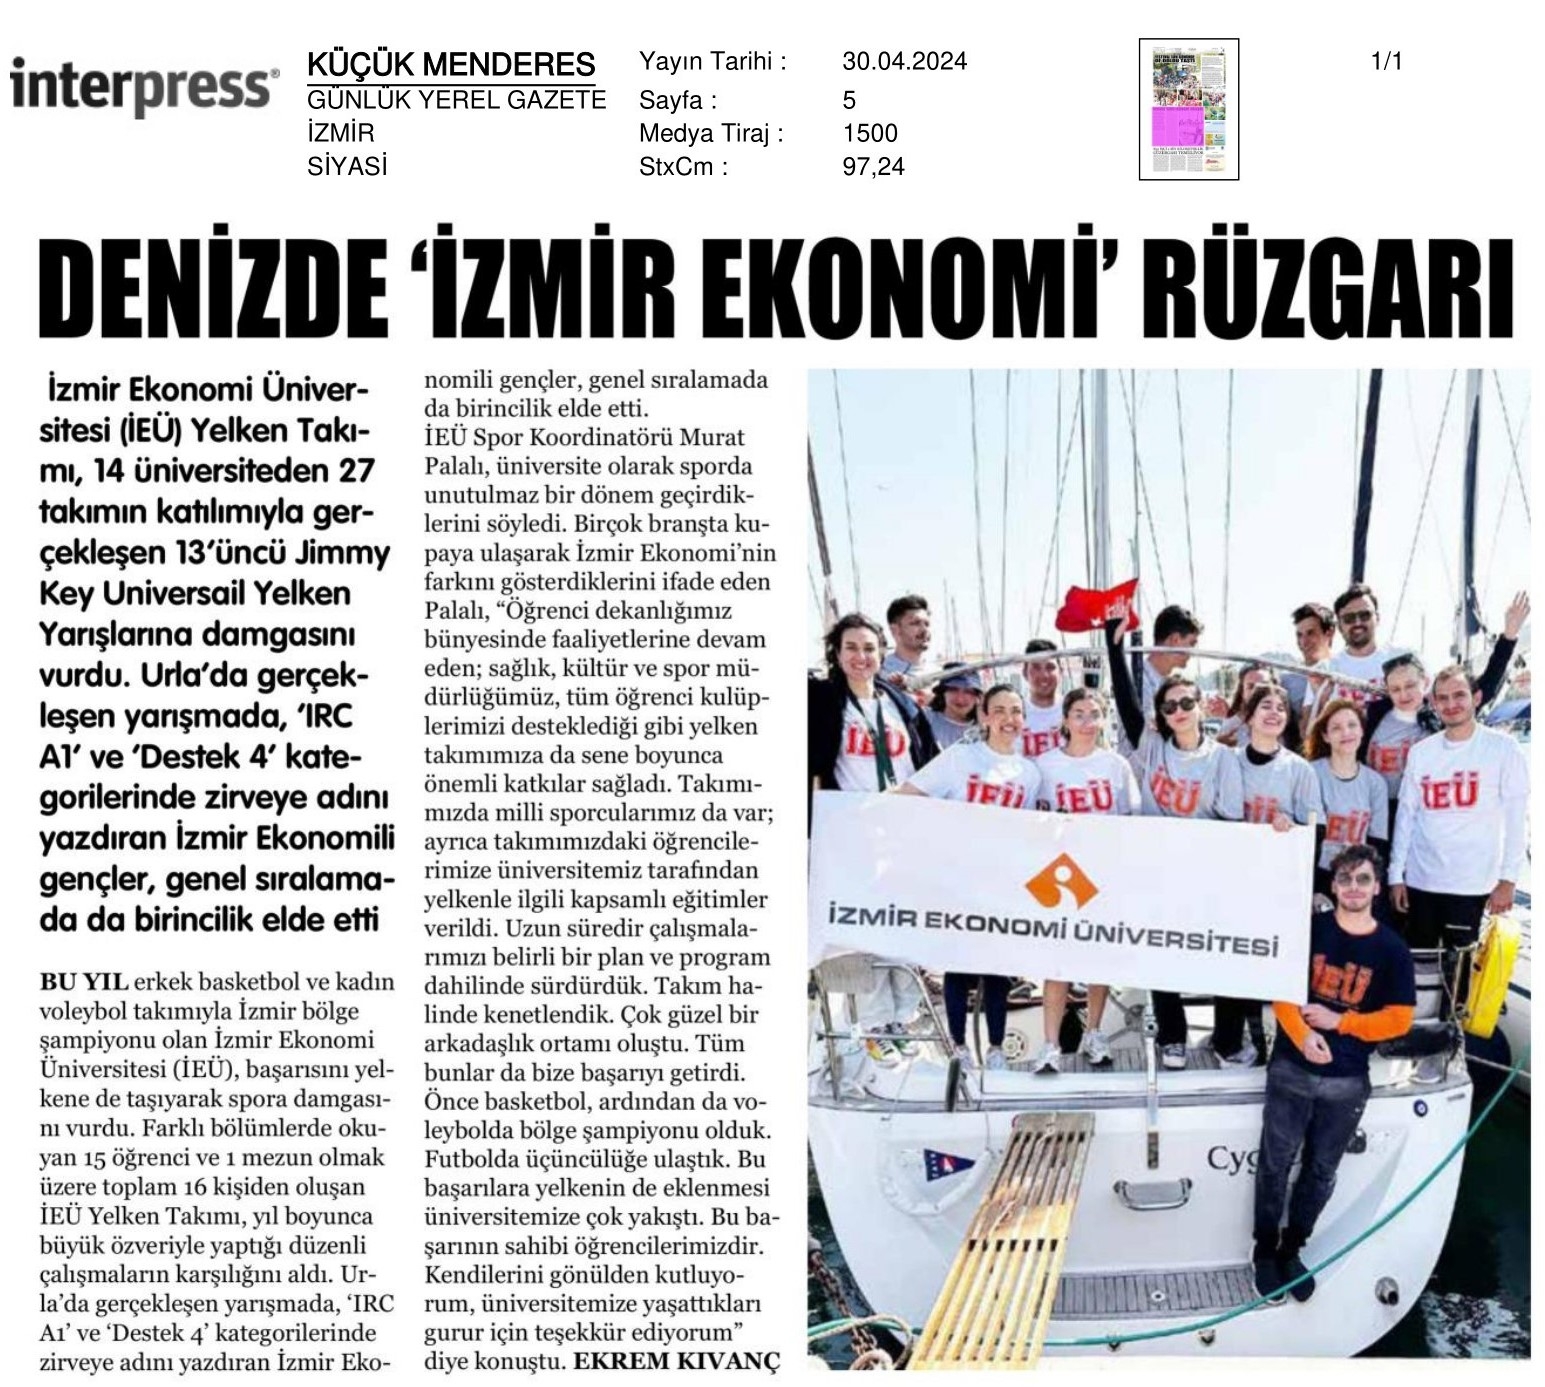 Denizde ‘İzmir Ekonomi’ Rüzgarı